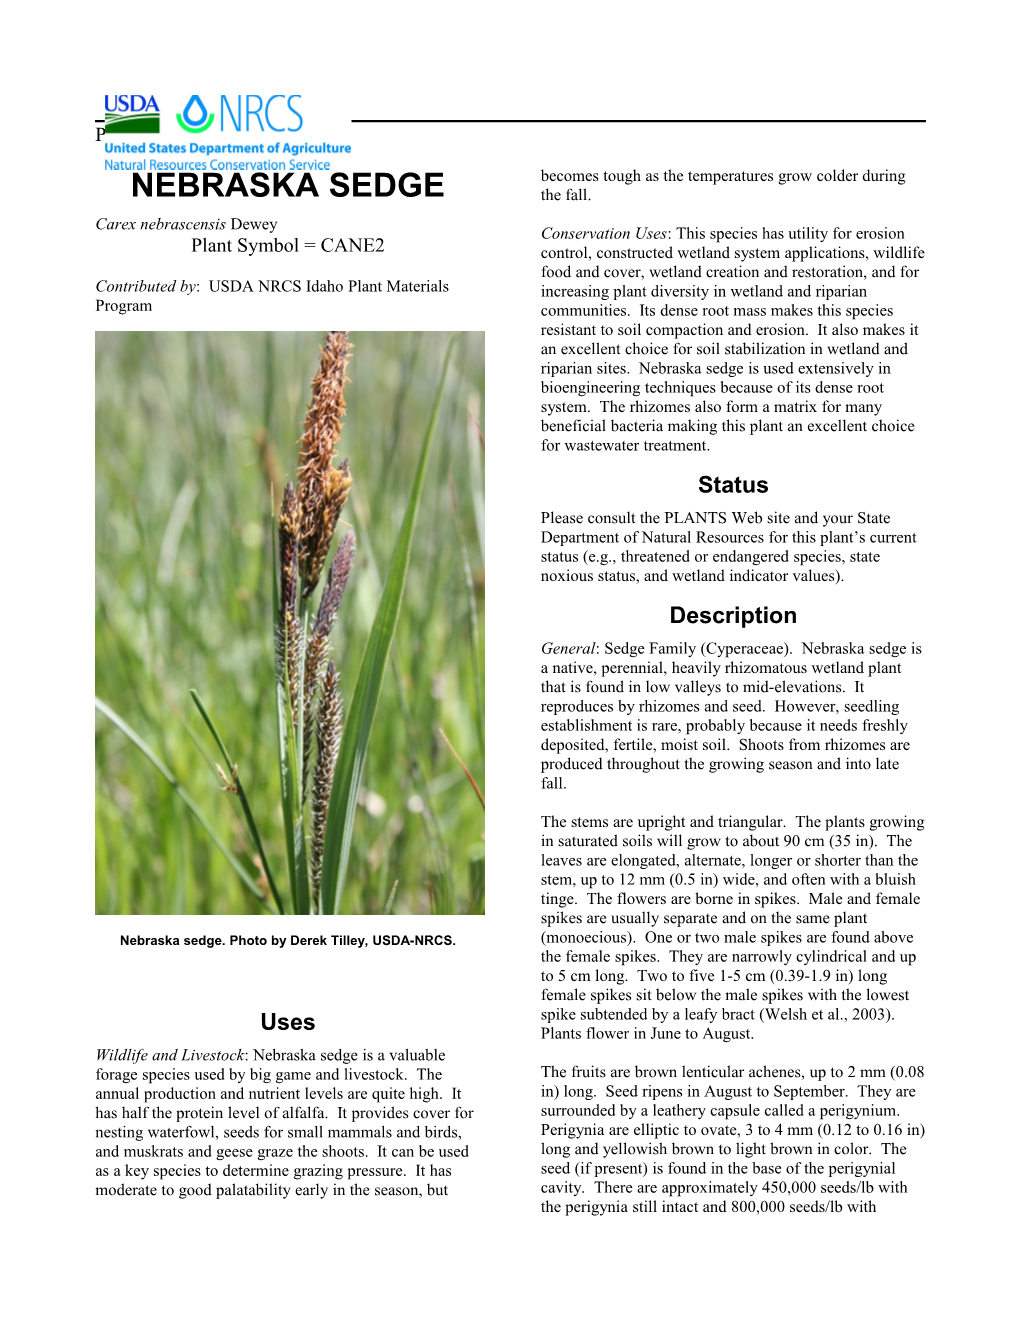 Plant Guide for Nebraska Sedge (Carex Nebrascensis)